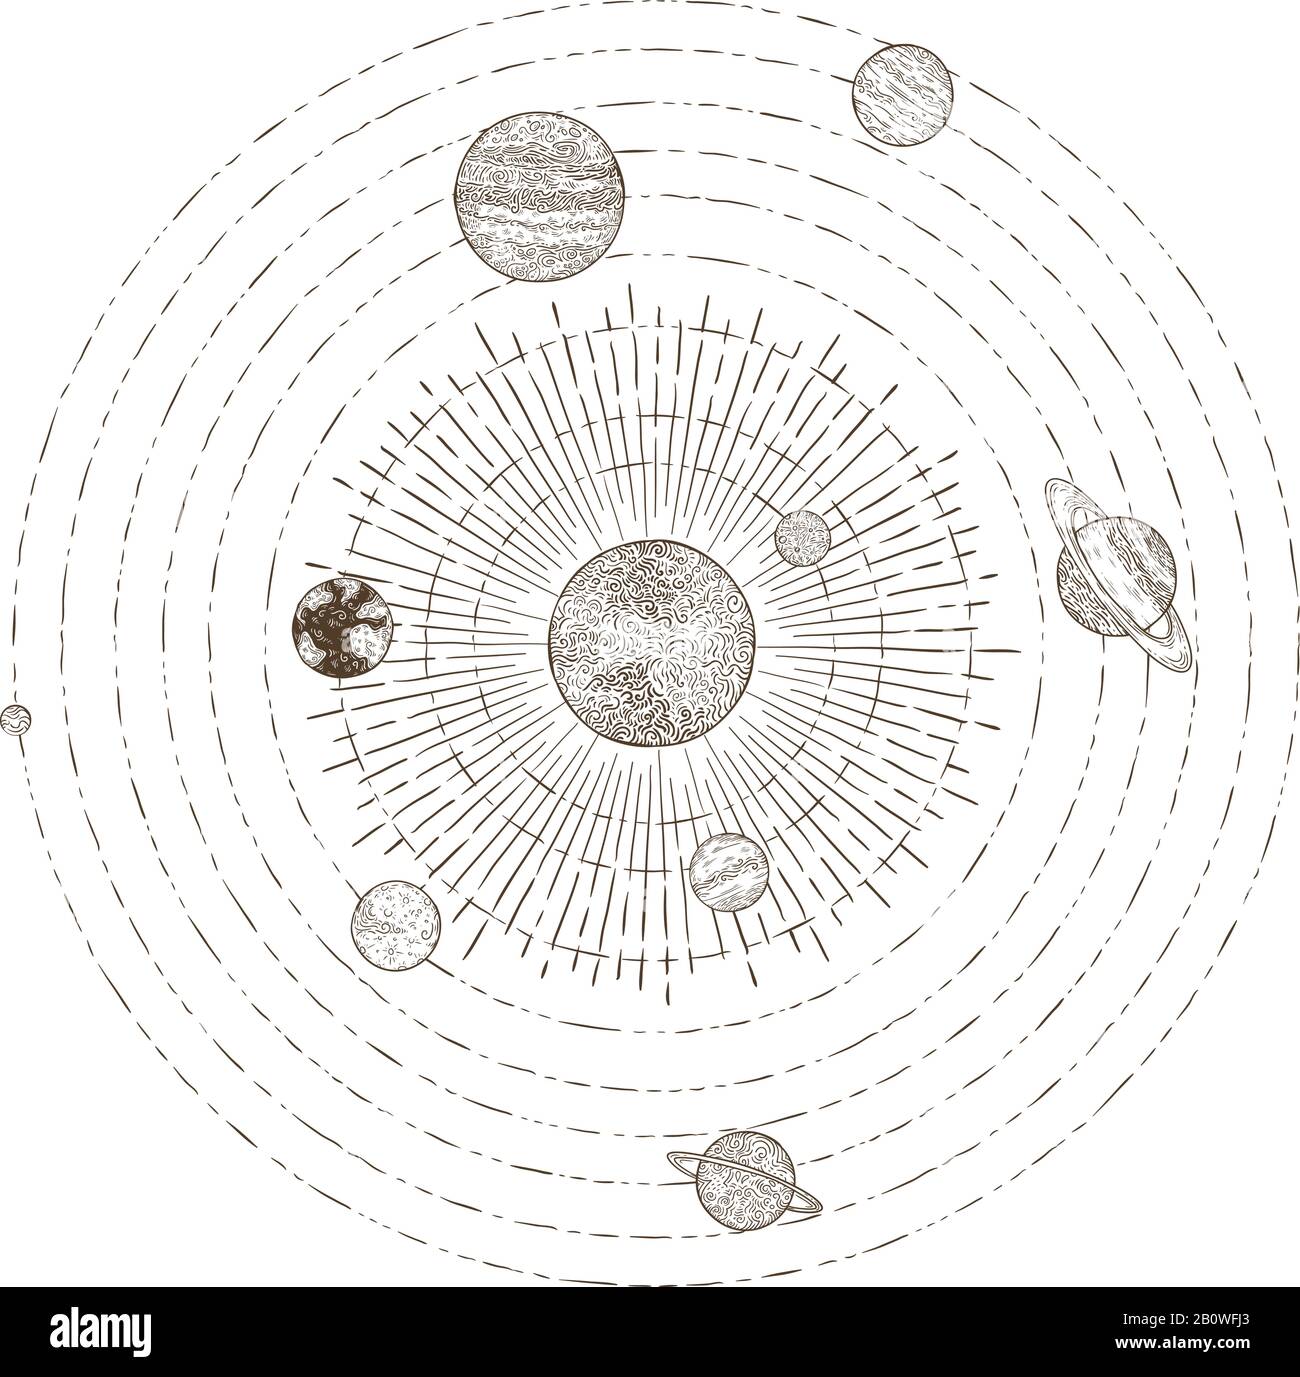 Órbitas de planetas del sistema solar. Dibujo a mano del planeta Tierra órbita alrededor del sol. Ilustración del vector planetario orbital clásico de la astronomía Ilustración del Vector